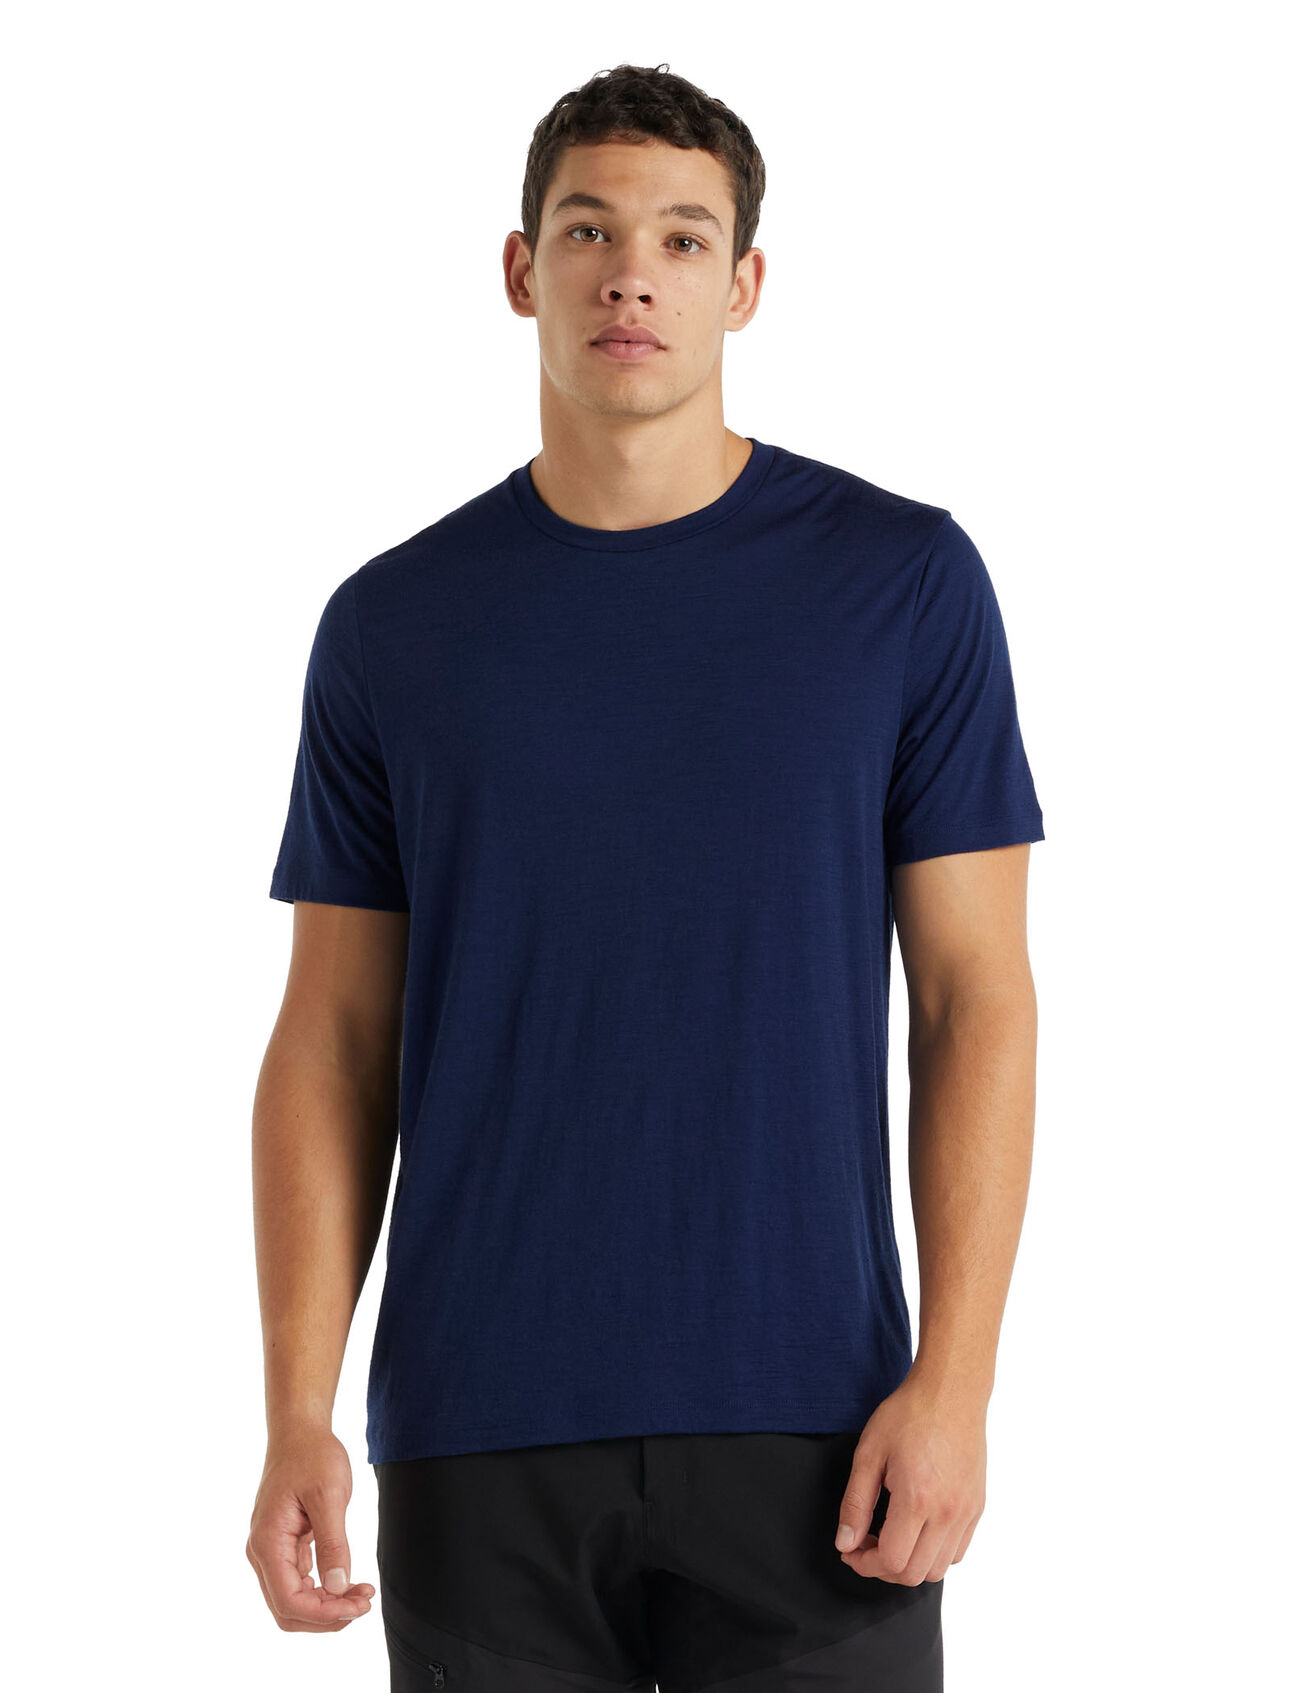 Merino tričko s krátkým rukávem Tech Lite II